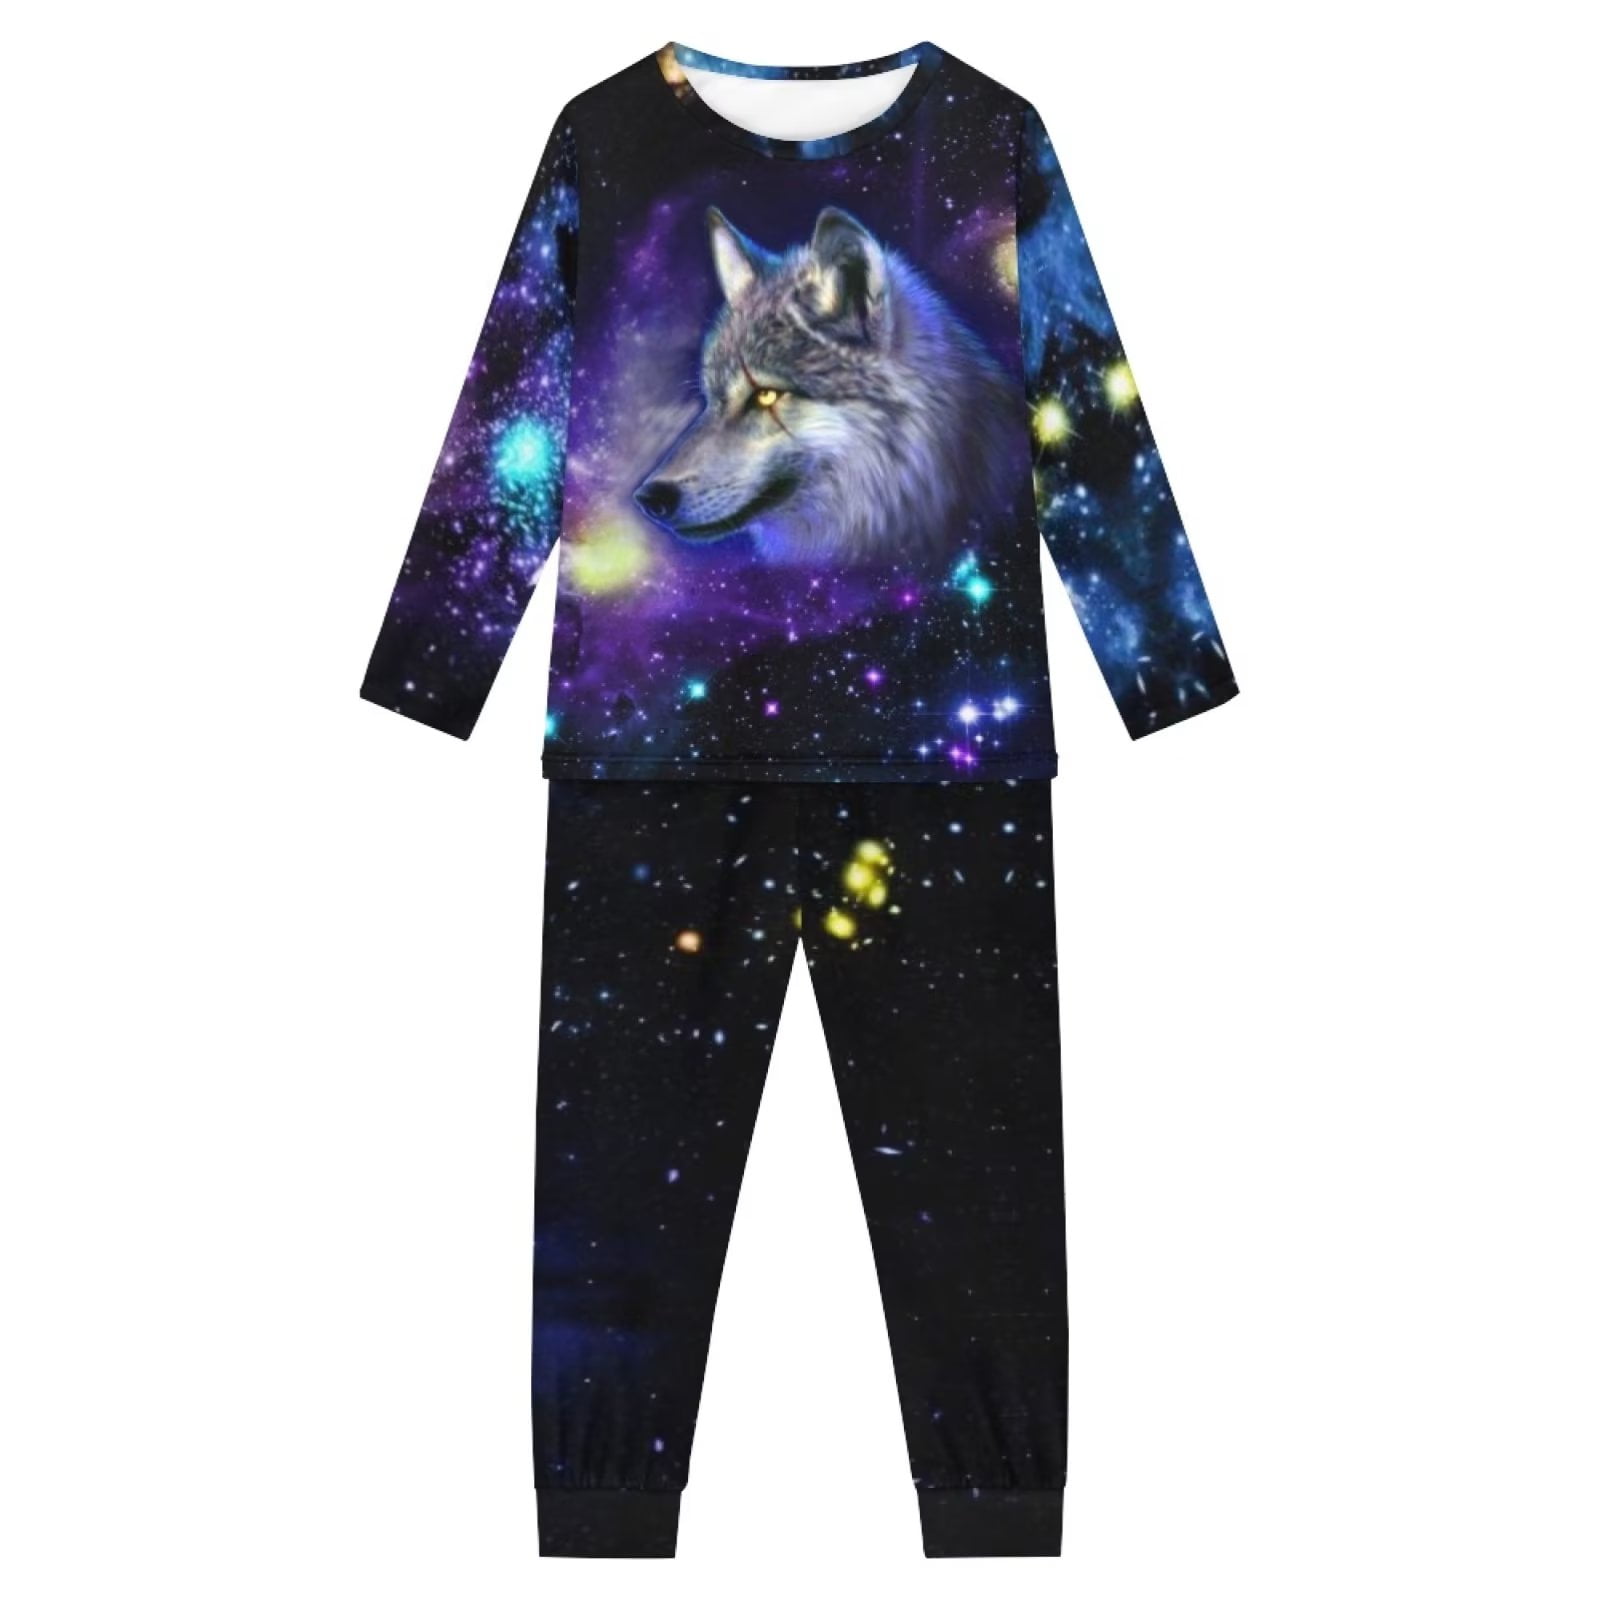 Binienty Nightwear for Kids Boys 3D Galaxy Wolf Casual Loungewear ...